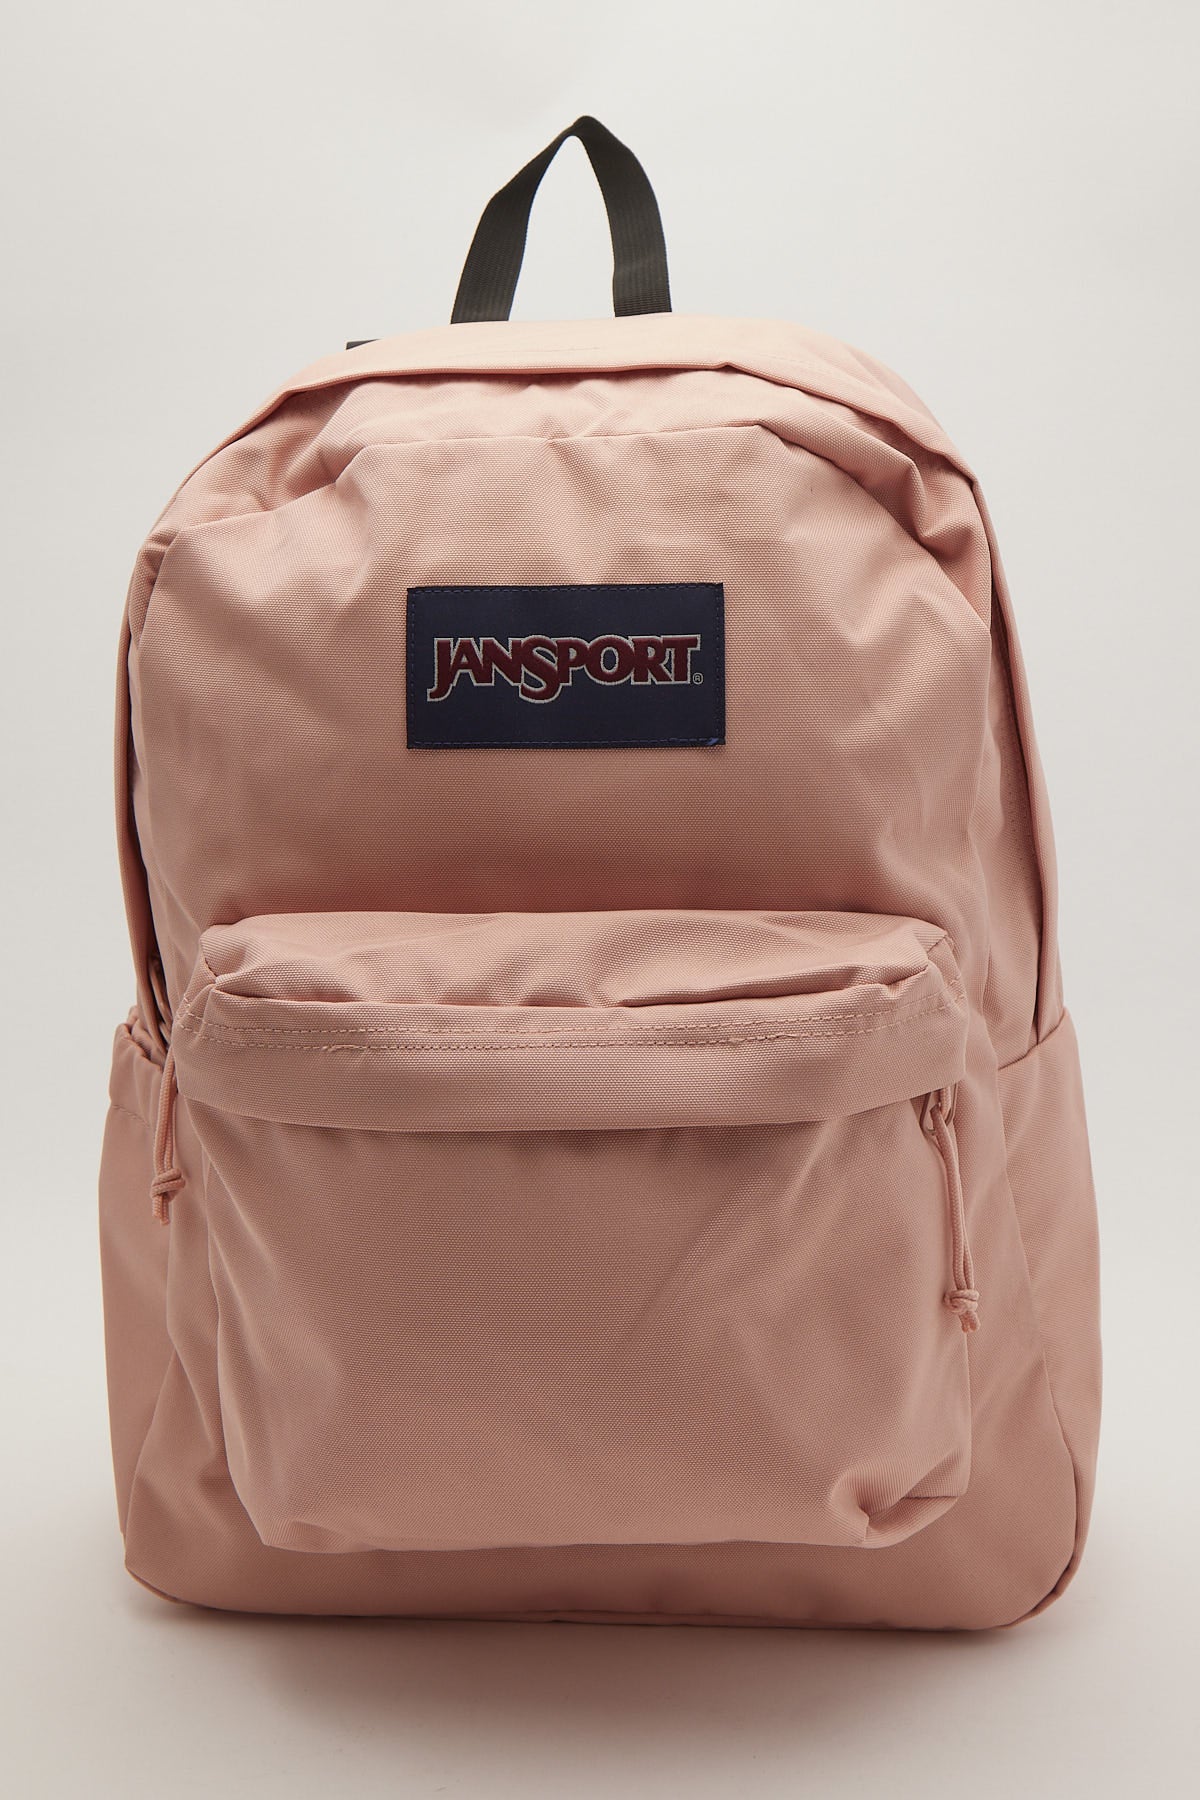 Jansport Superbreak Plus Backpack Misty Rose